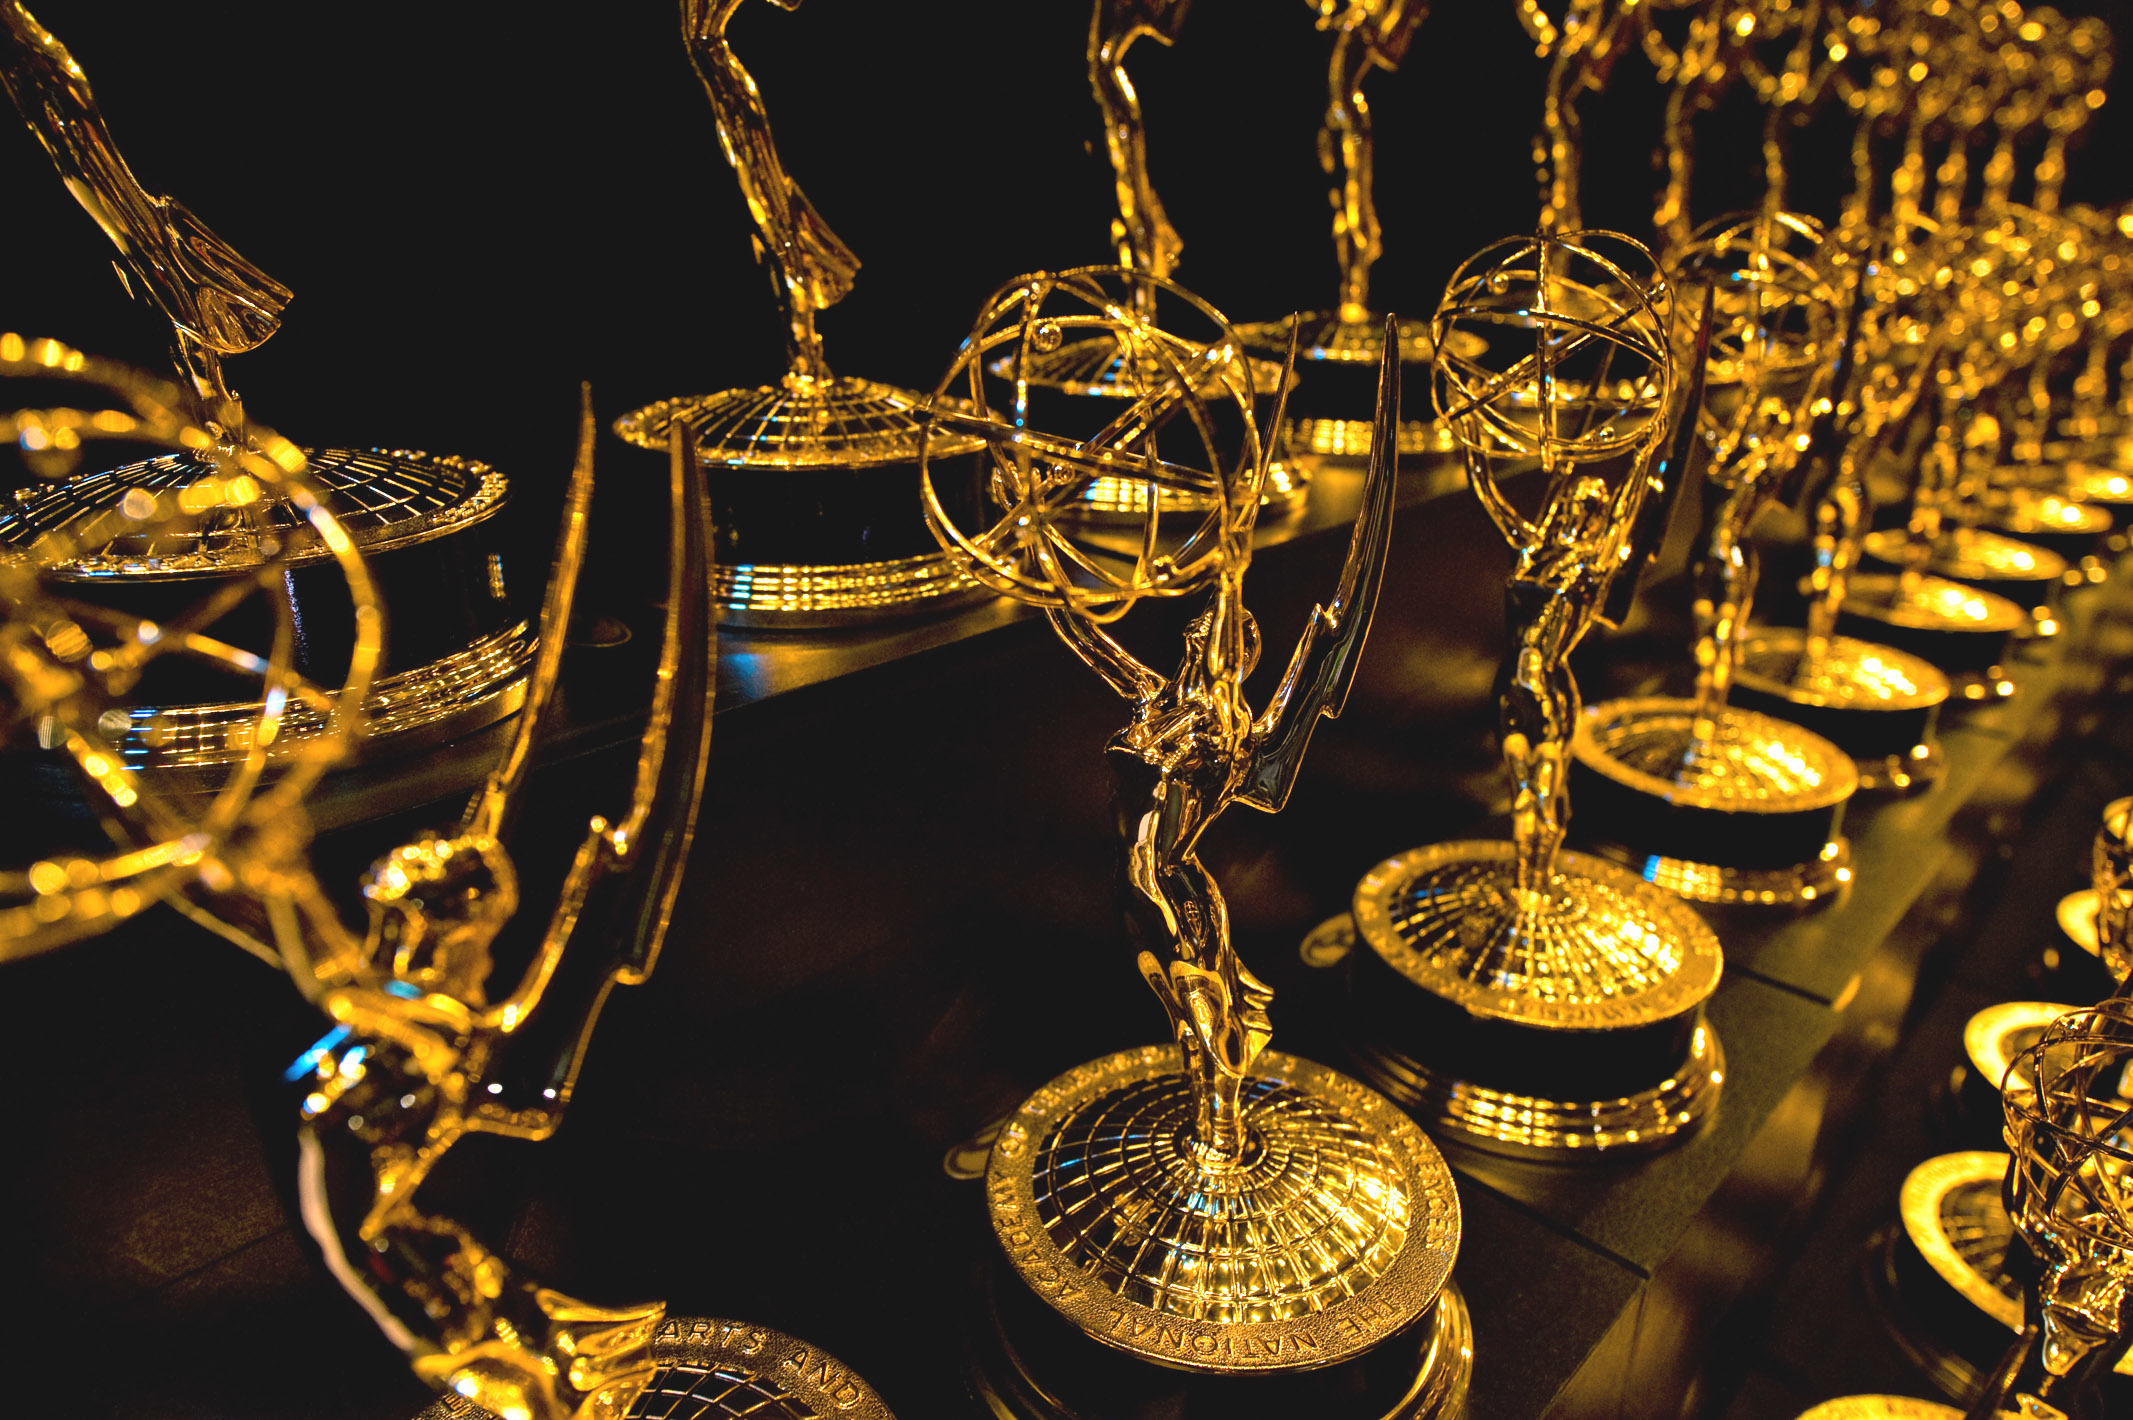 Emmy Ödülleri 2017: Peki Kim Kazanmalı?